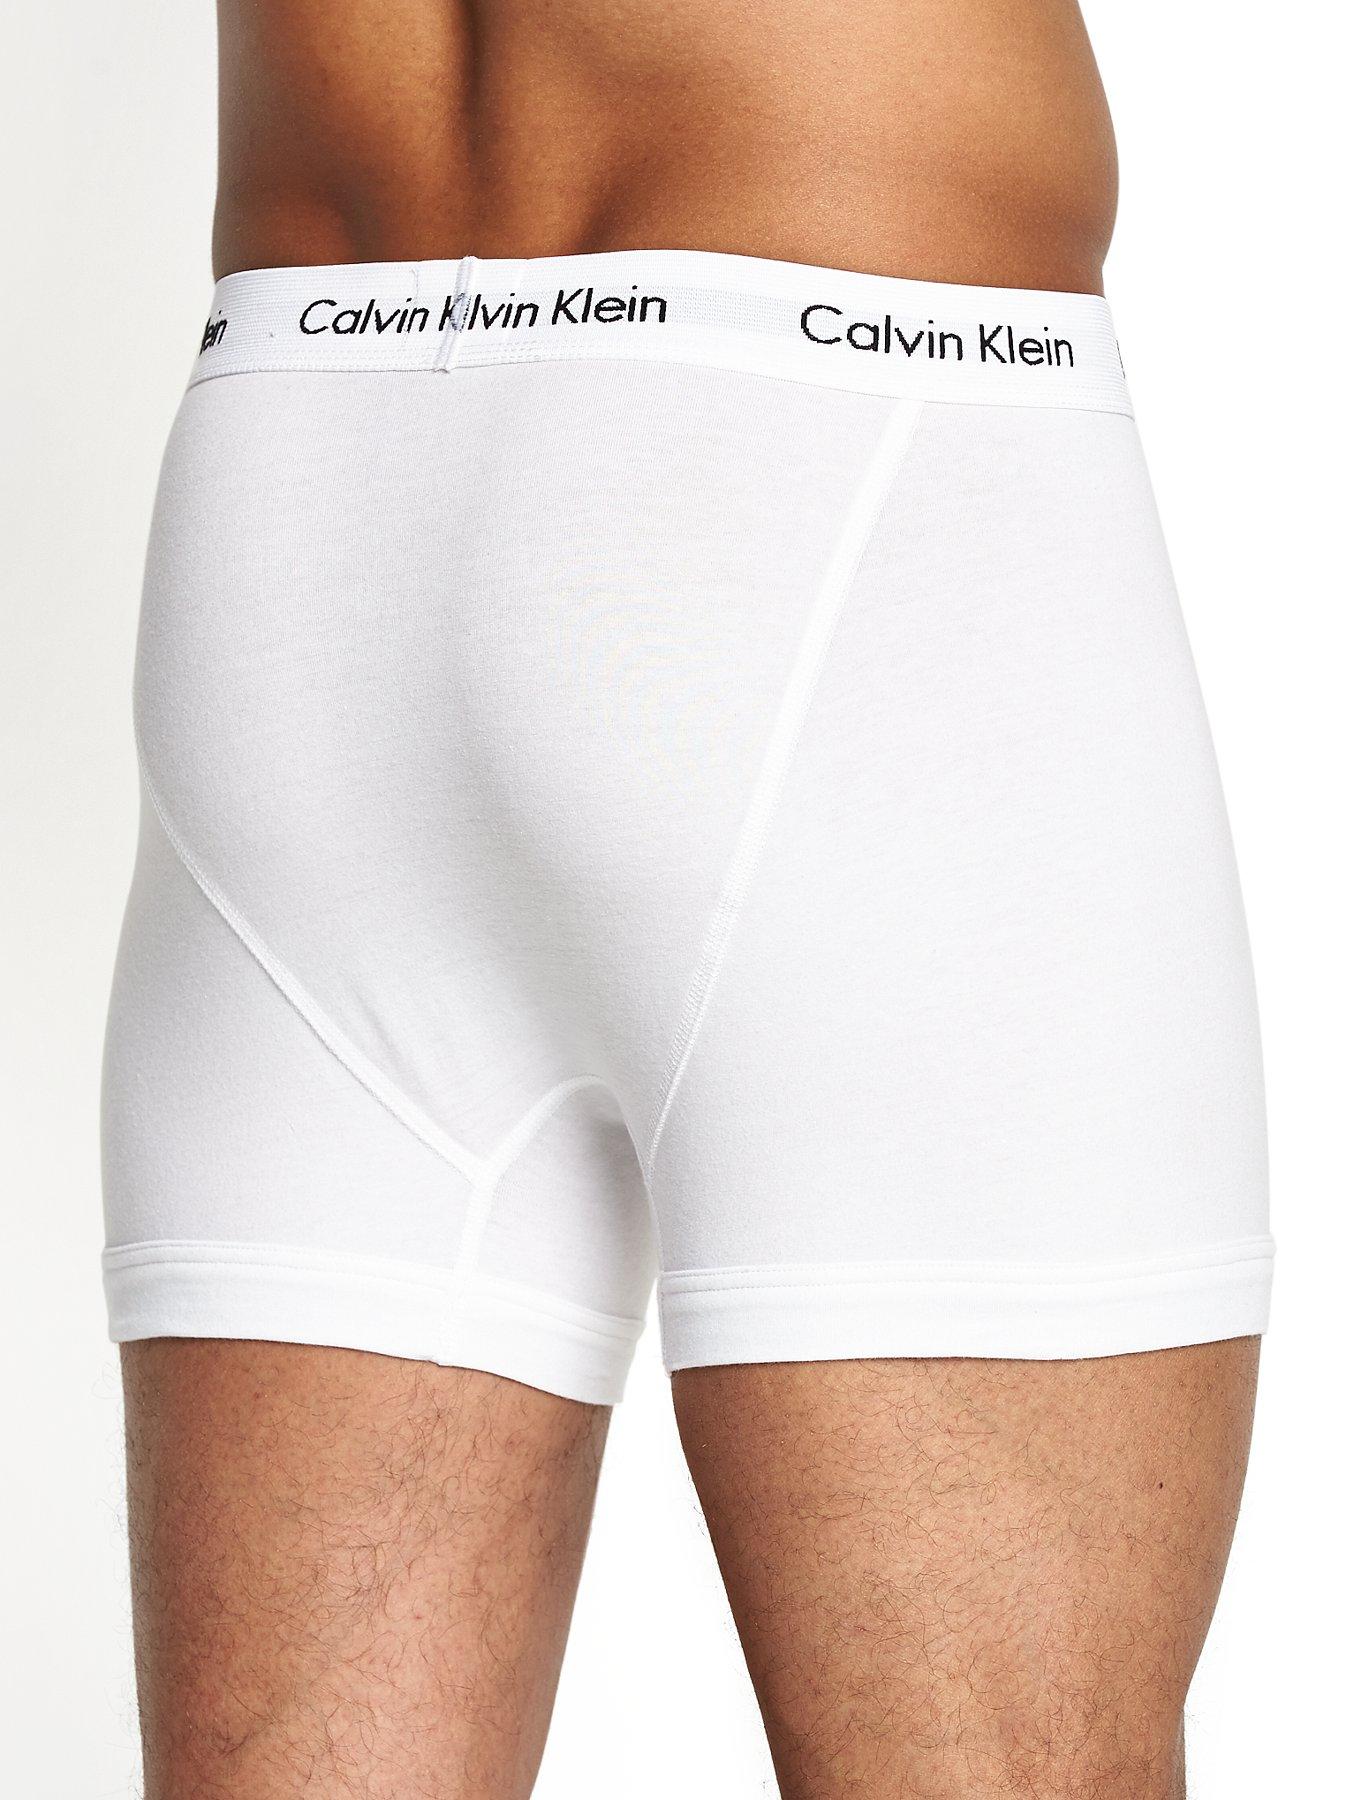 Calvin Klein Core 3 Pack Trunks - White | Very.co.uk